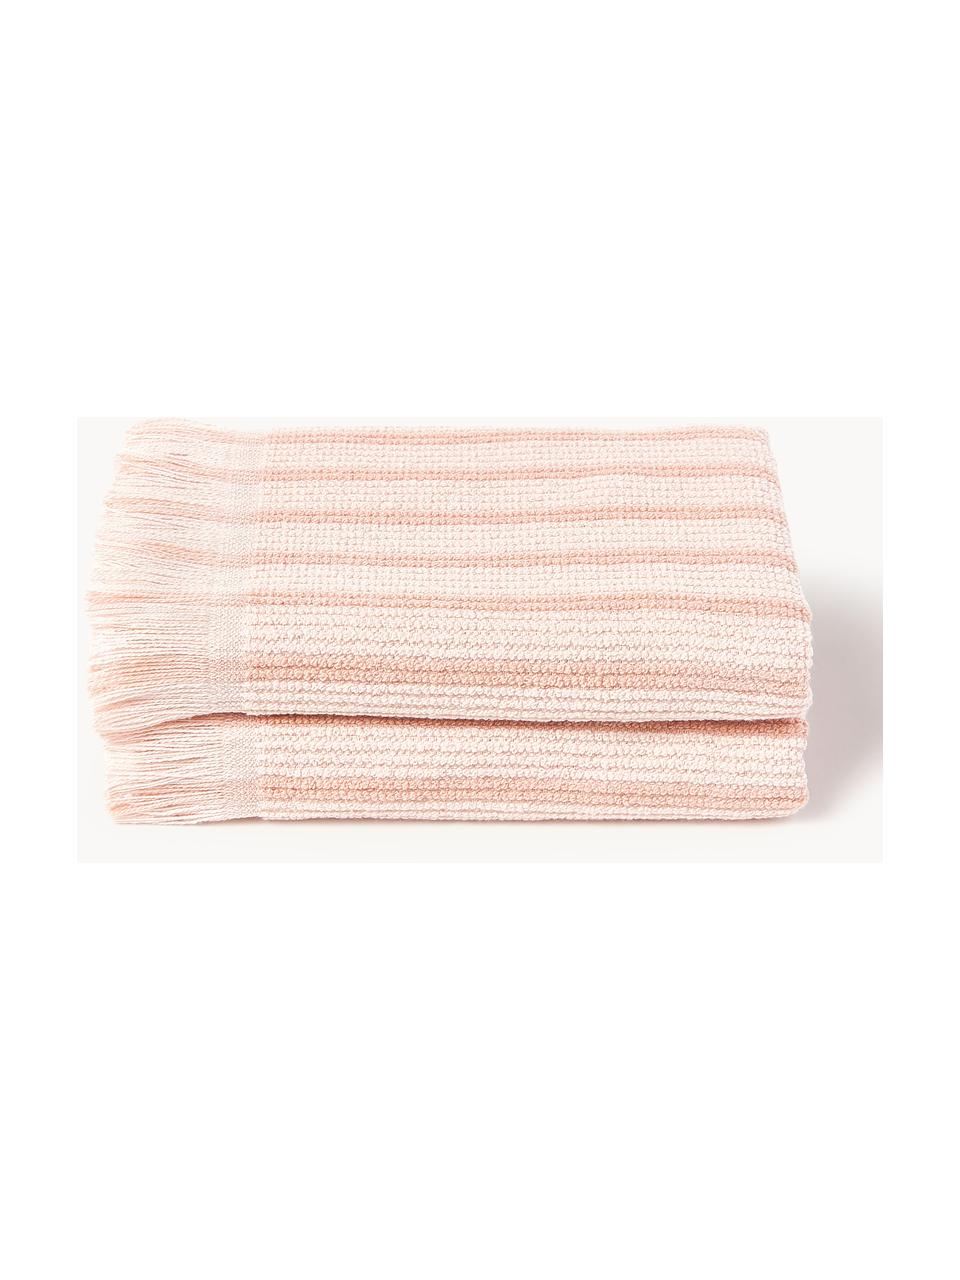 Ręcznik Irma, różne rozmiary, Jasny różowy, Ręcznik do rąk, S 50 x D 100 cm, 2 szt.